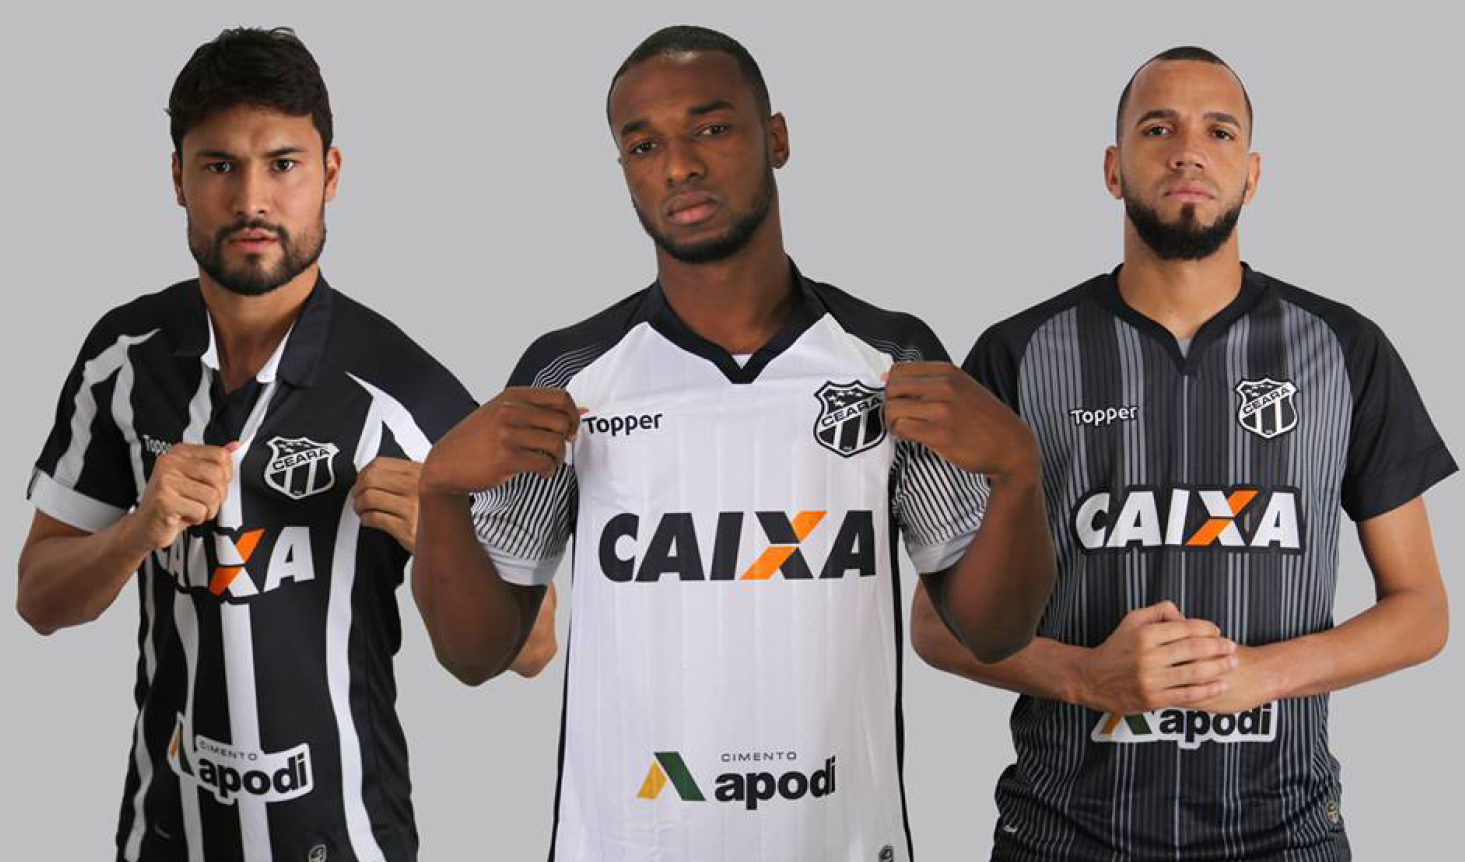 Ceará lança nova linha de uniformes Topper para a temporada 2017/2018